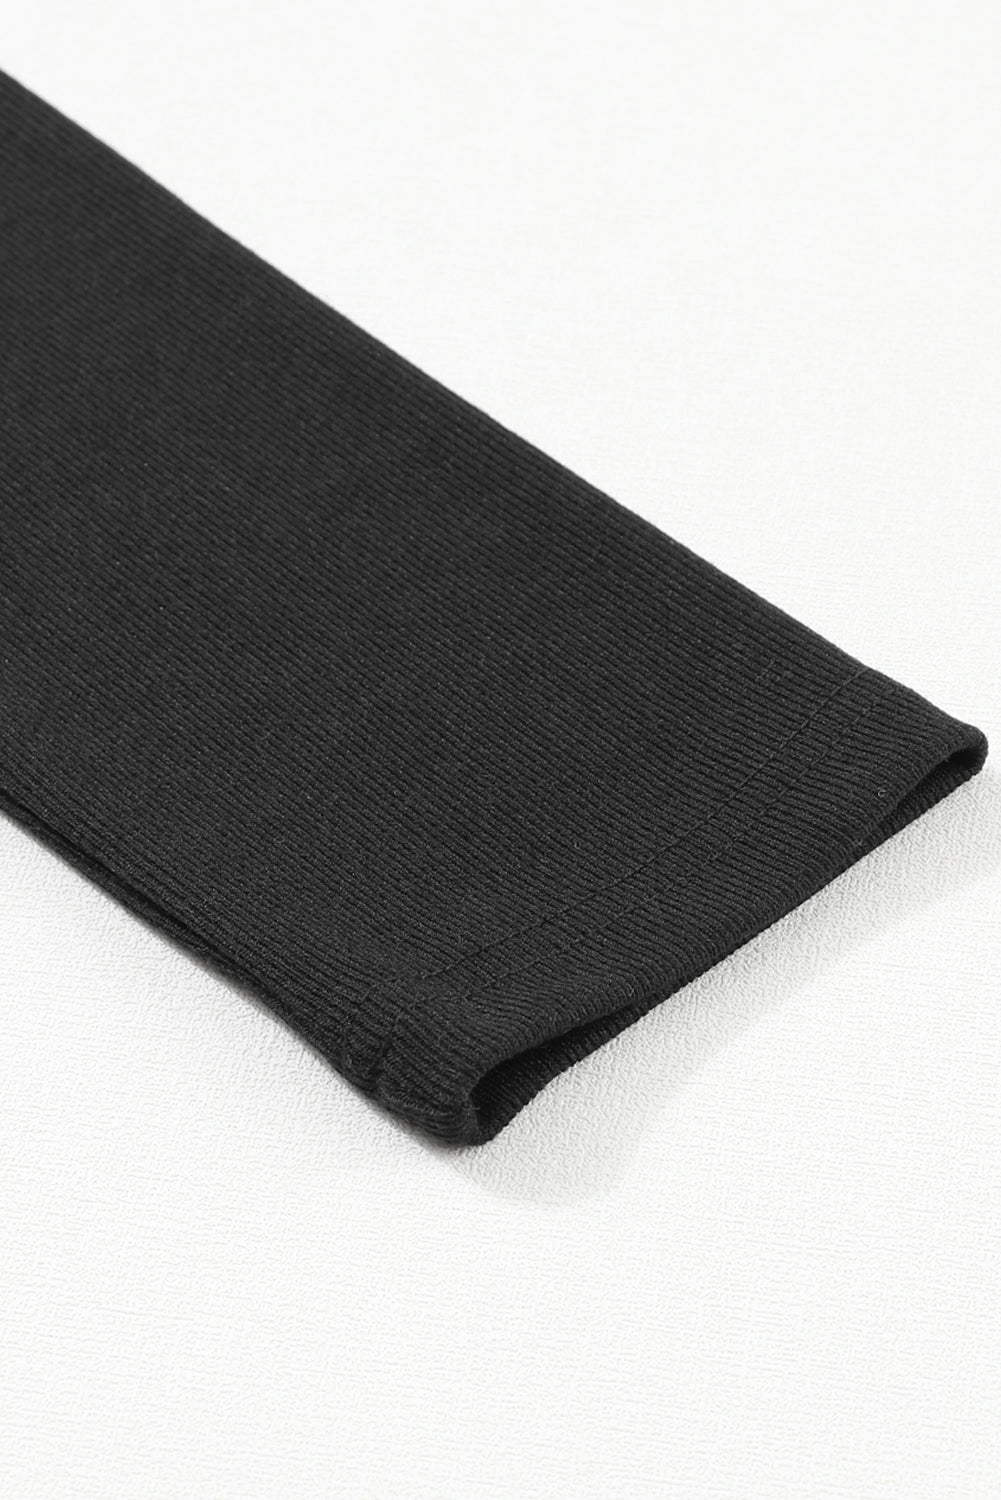 Crna rebrasta Peekaboo majica s izrezima dugih rukava